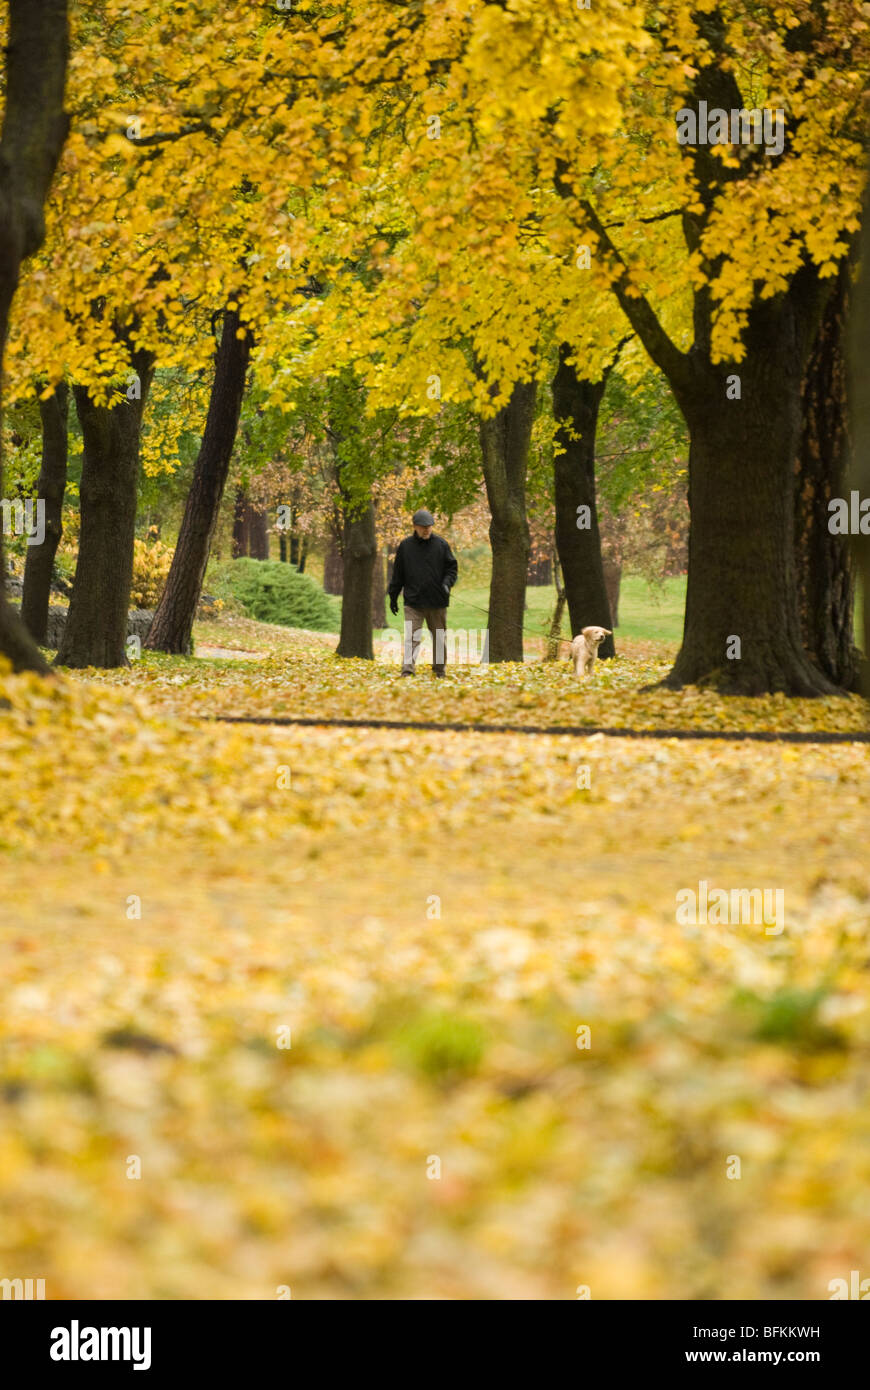 A man walks his dog along S. Manito Blvd near Manito Park in Spokane, Washington. Stock Photo